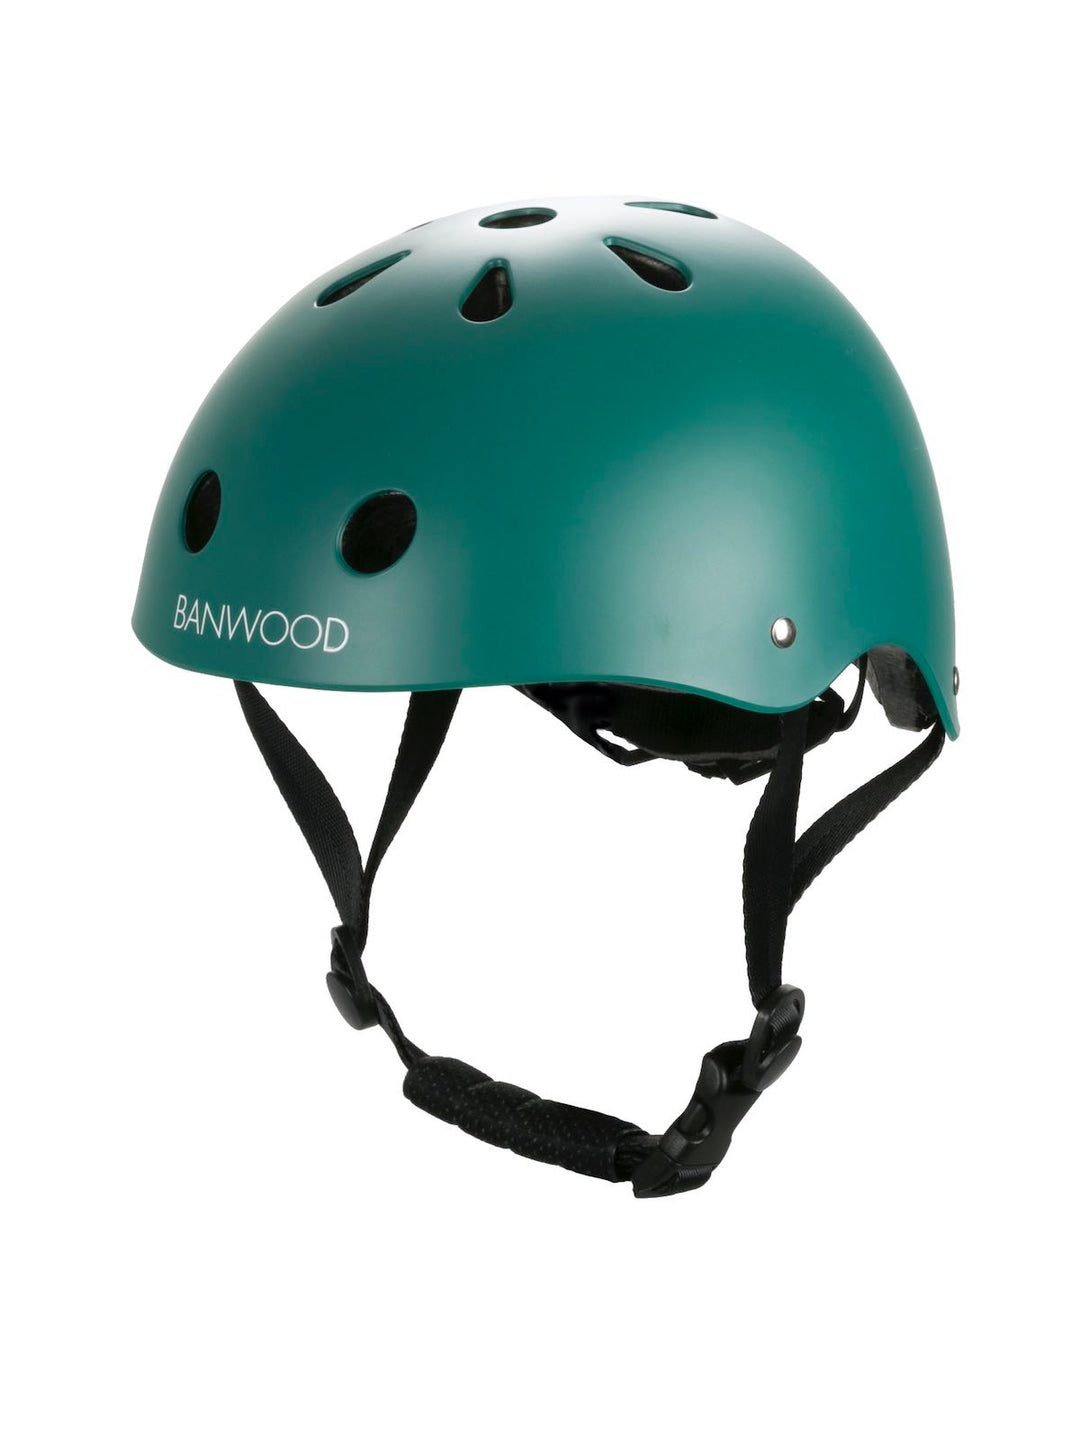 Banwood Classic Helmet in Green